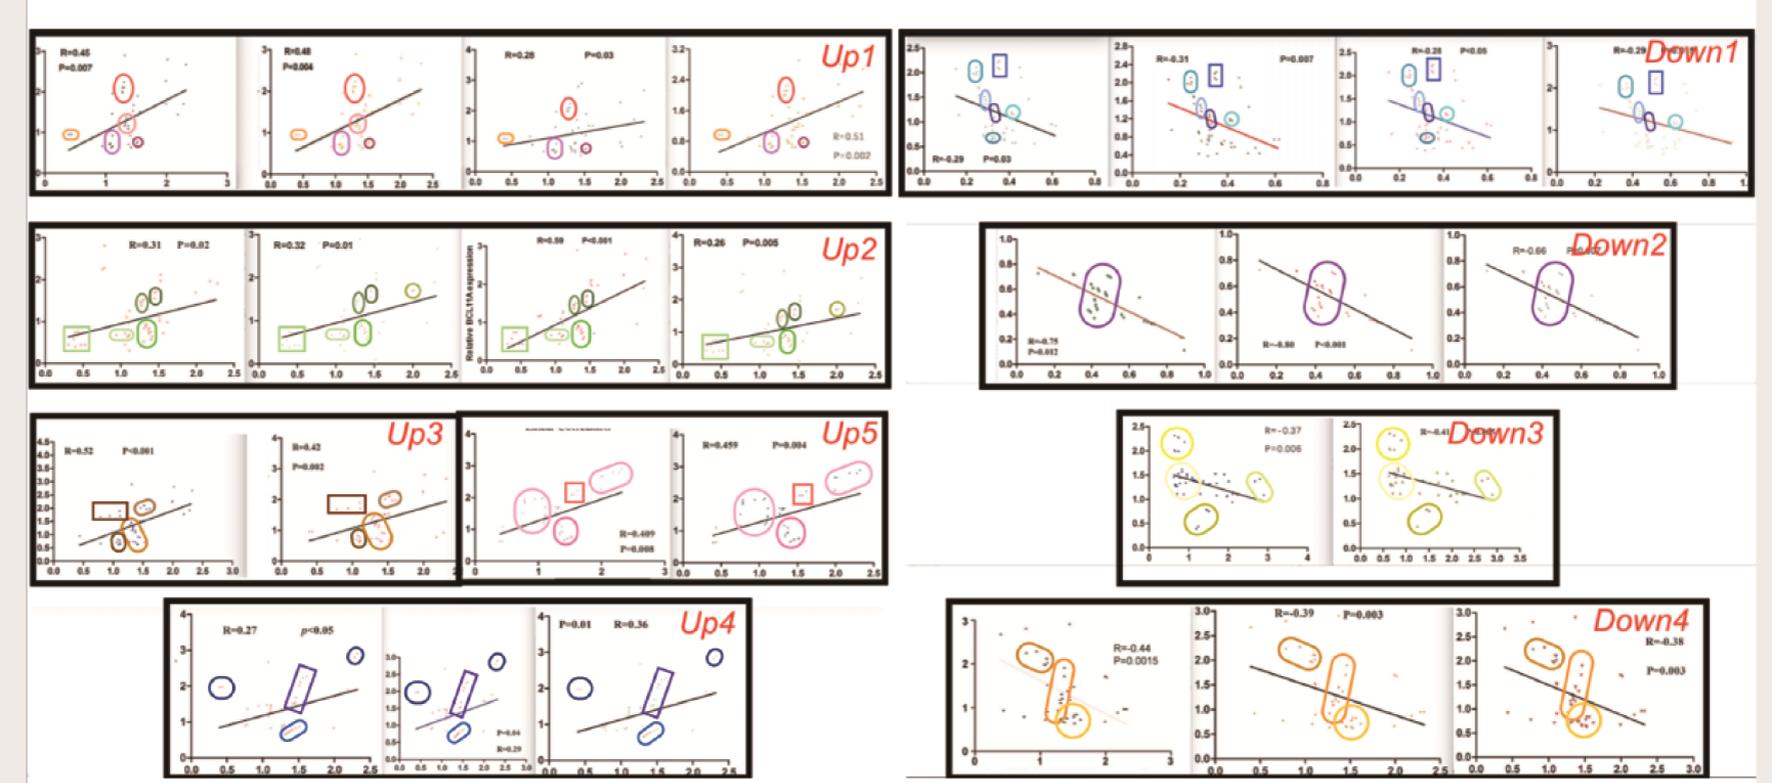  相关分析9个“种子”图片示意图（Up1-5和Down1-4）。